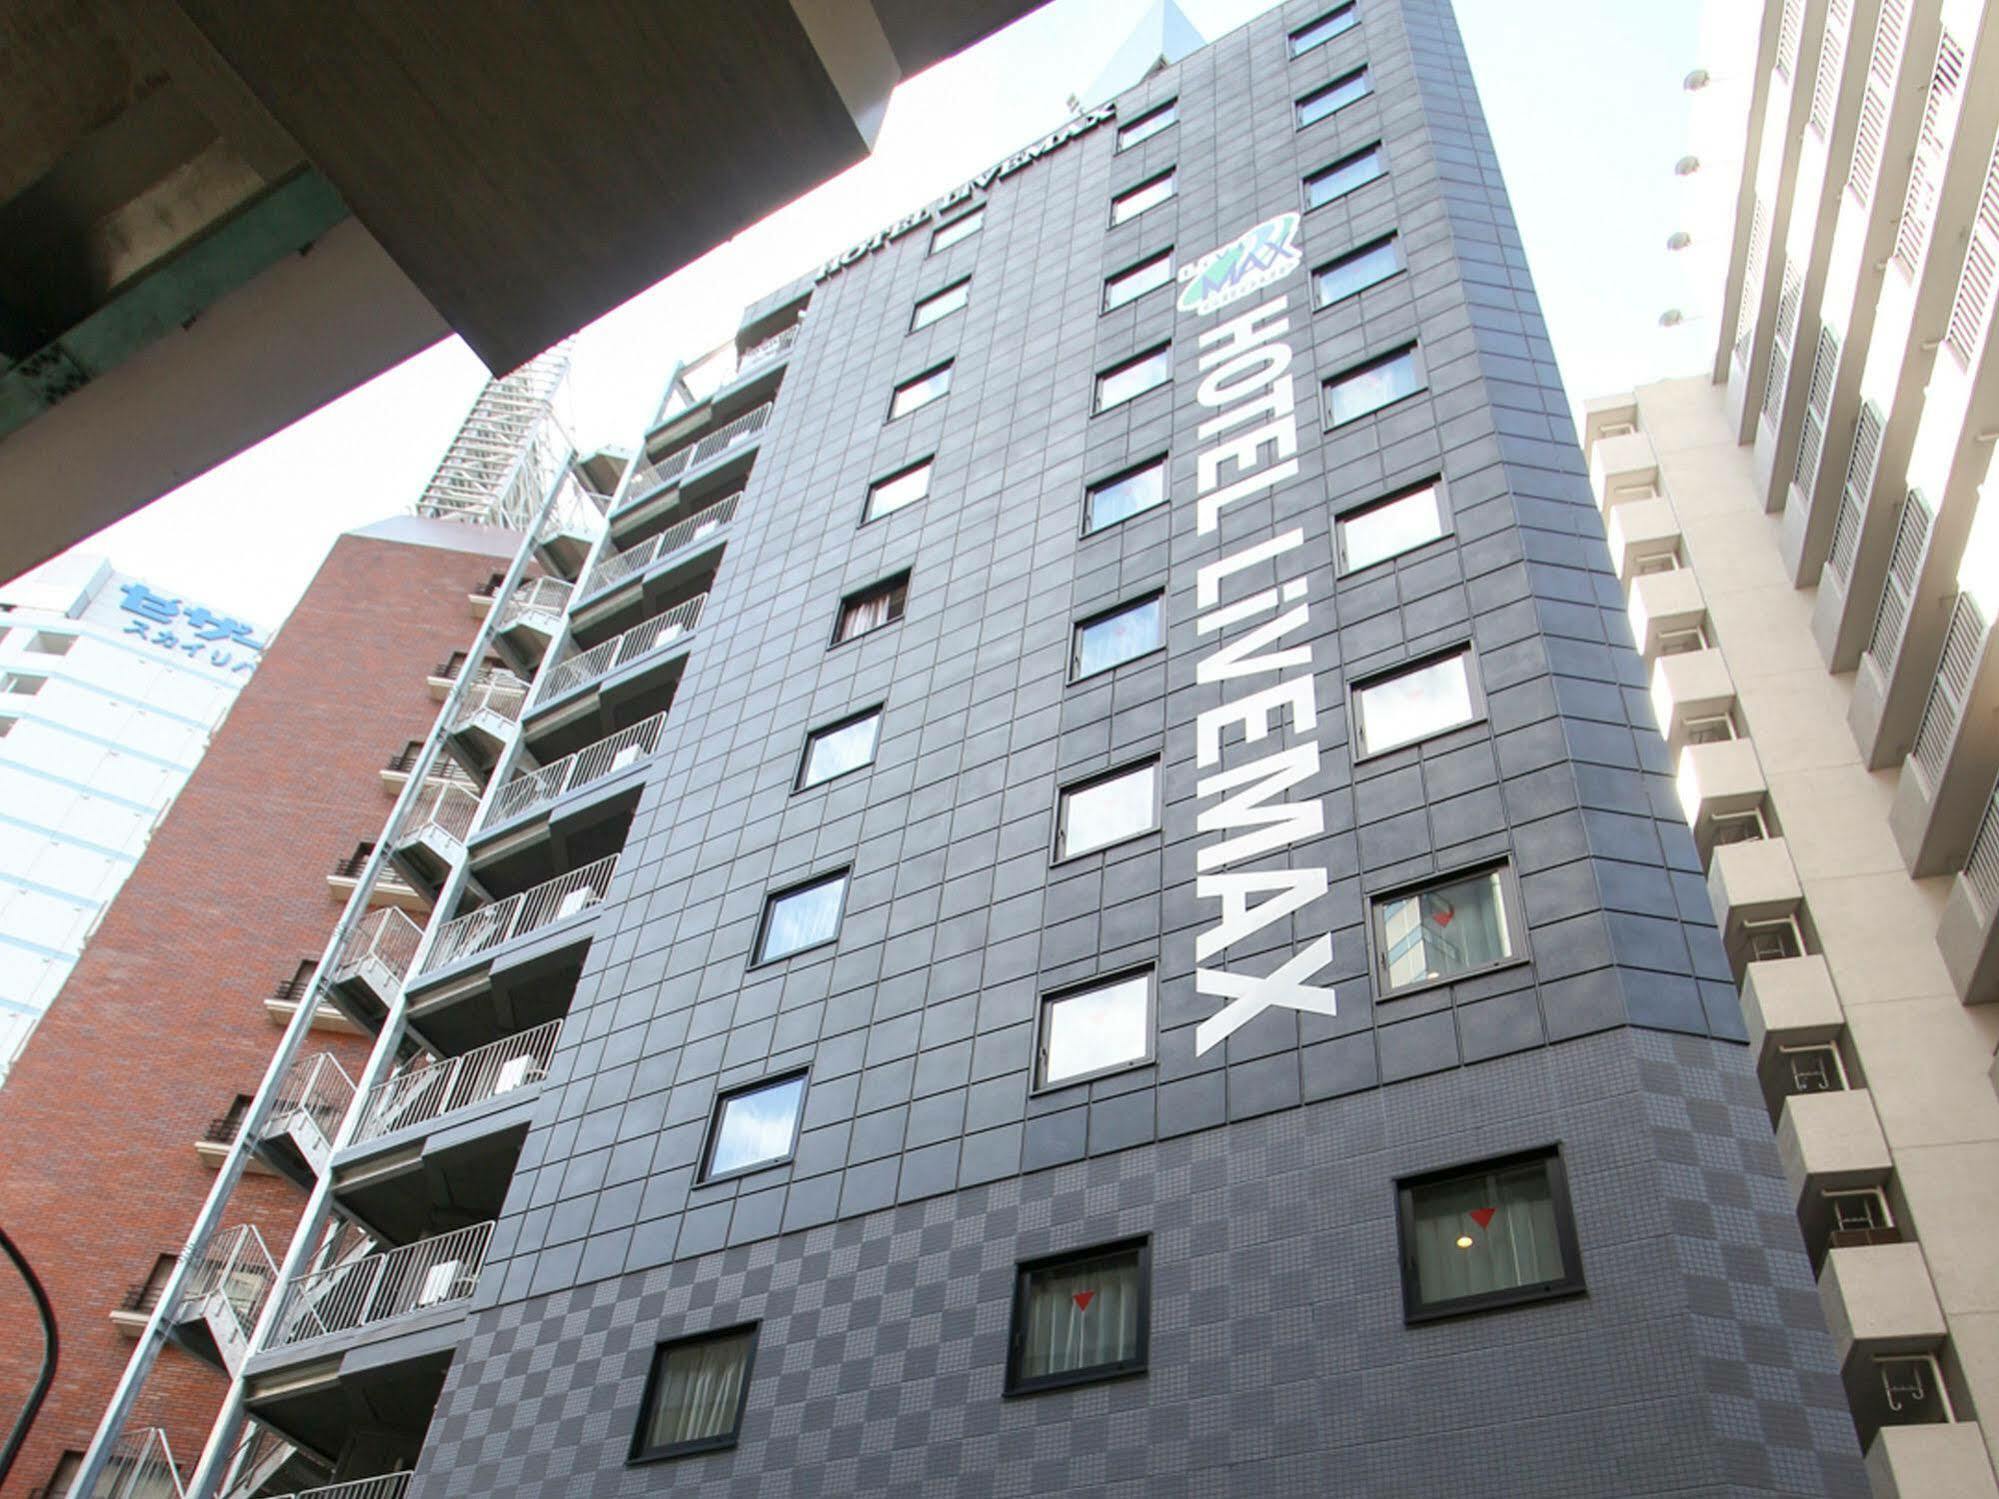 Hotel Livemax Nihonbashi Hakozaki Tokyo Luaran gambar